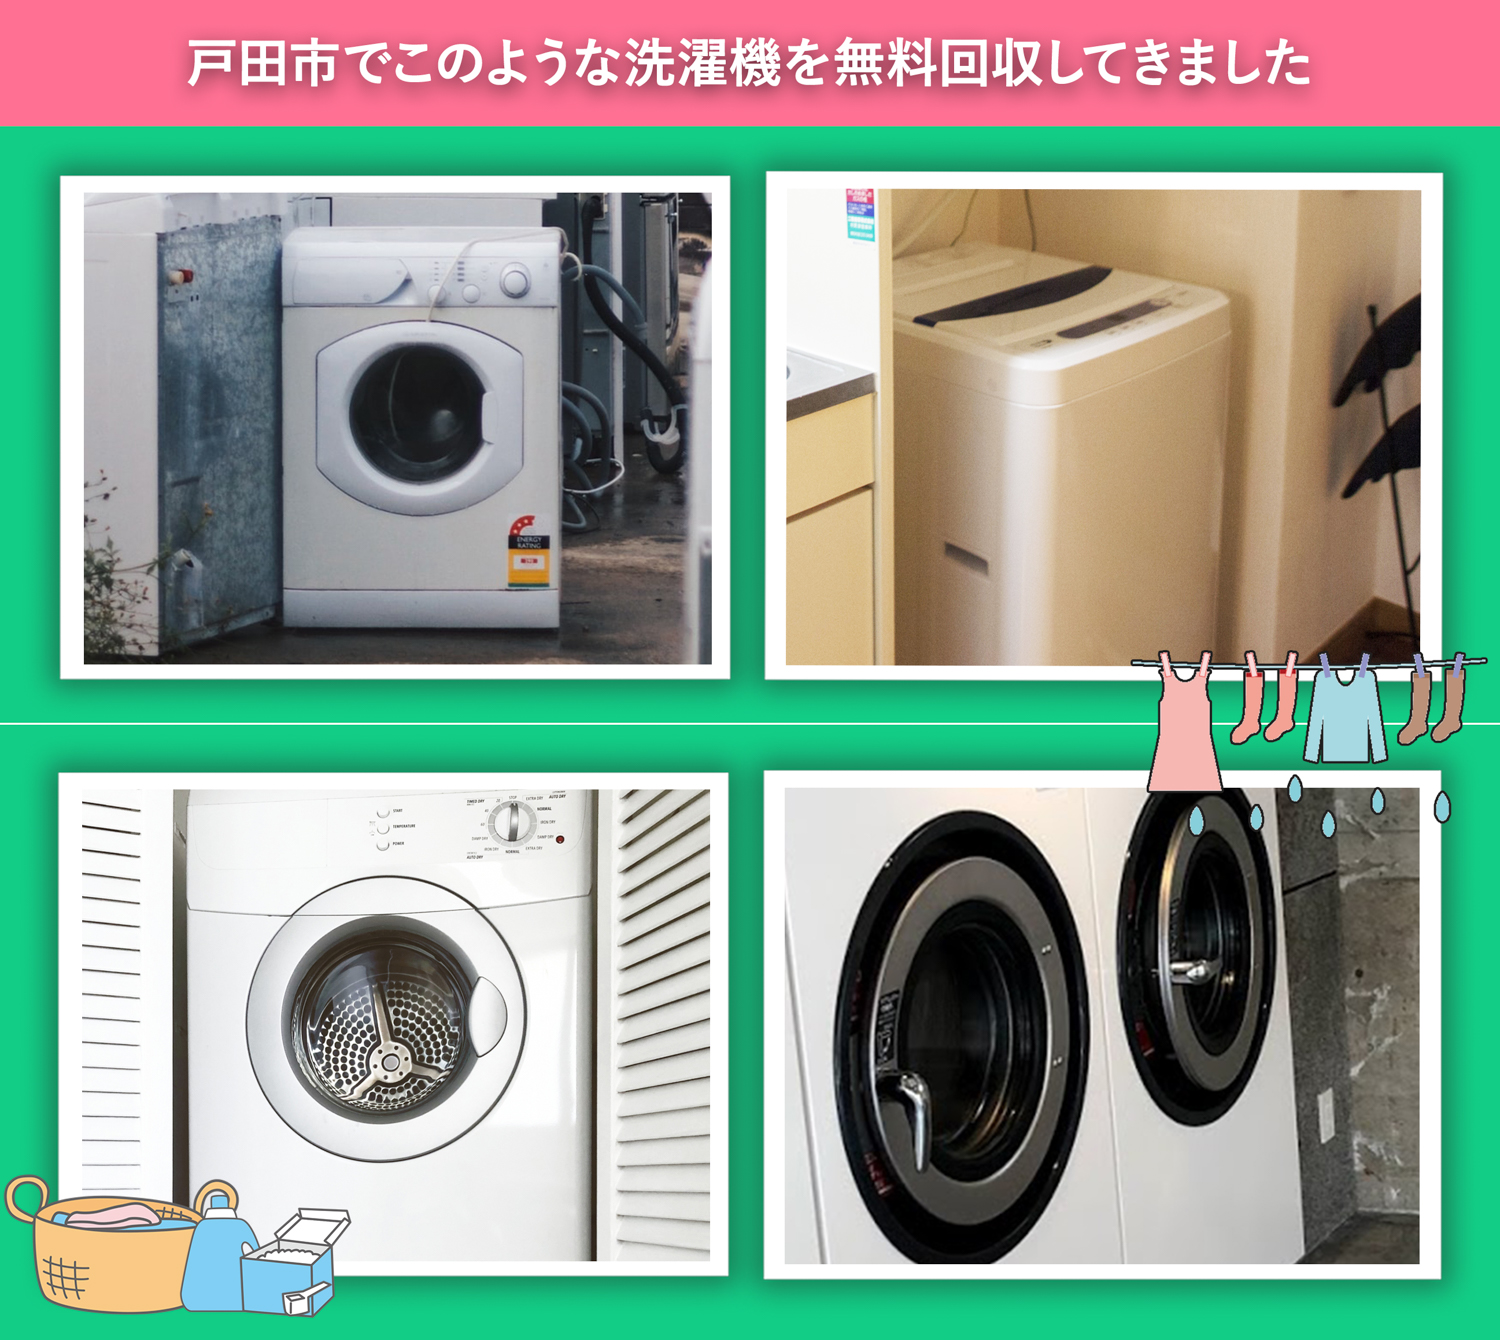 戸田市でこのような洗濯機を無料回収してきました。